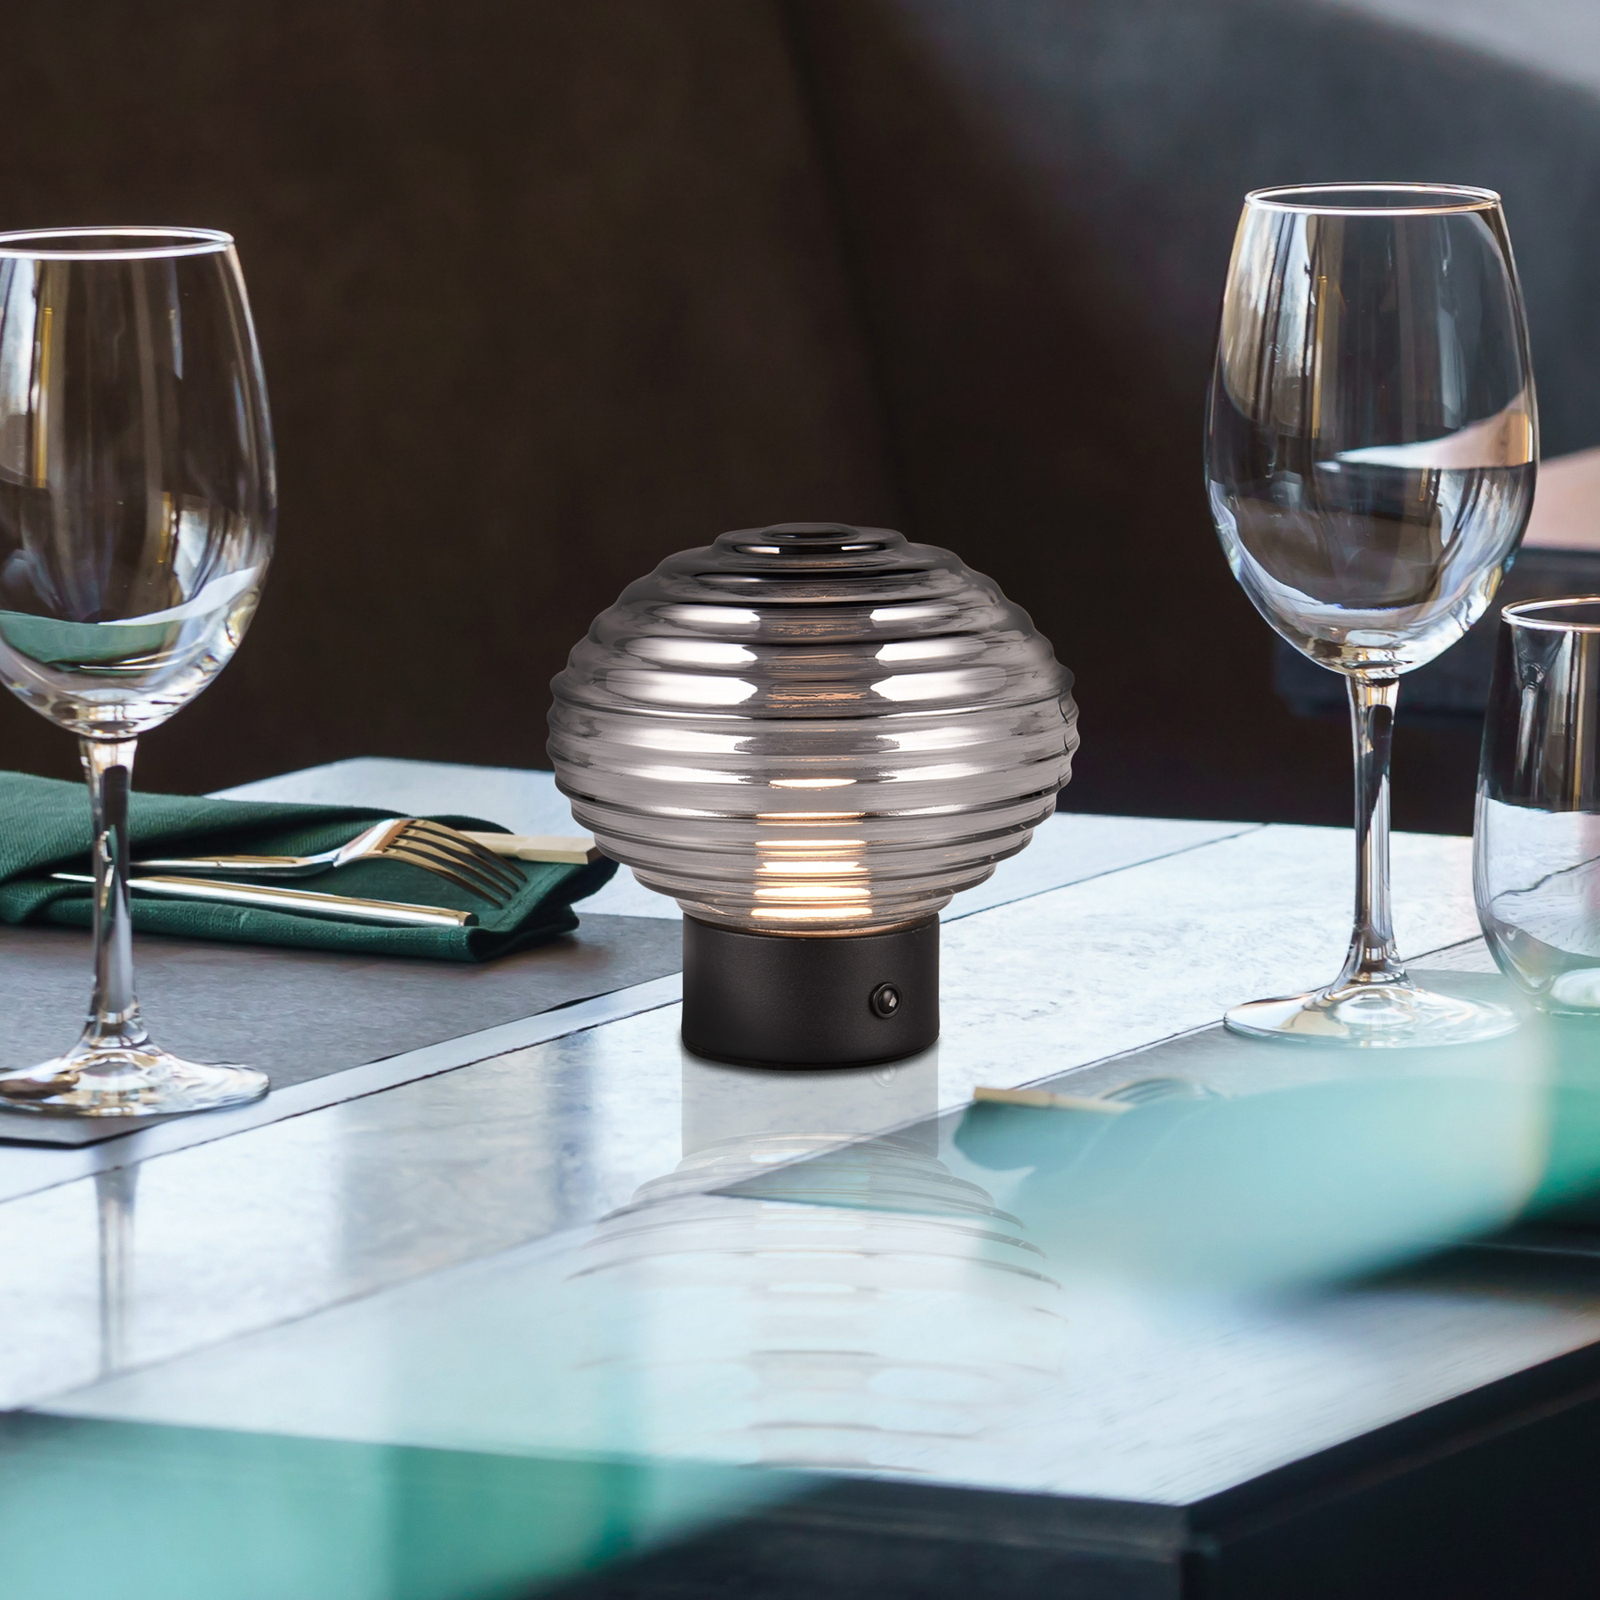 Lampe de table LED rechargeable Earl, noir/fumée, hauteur 14,5 cm, verre